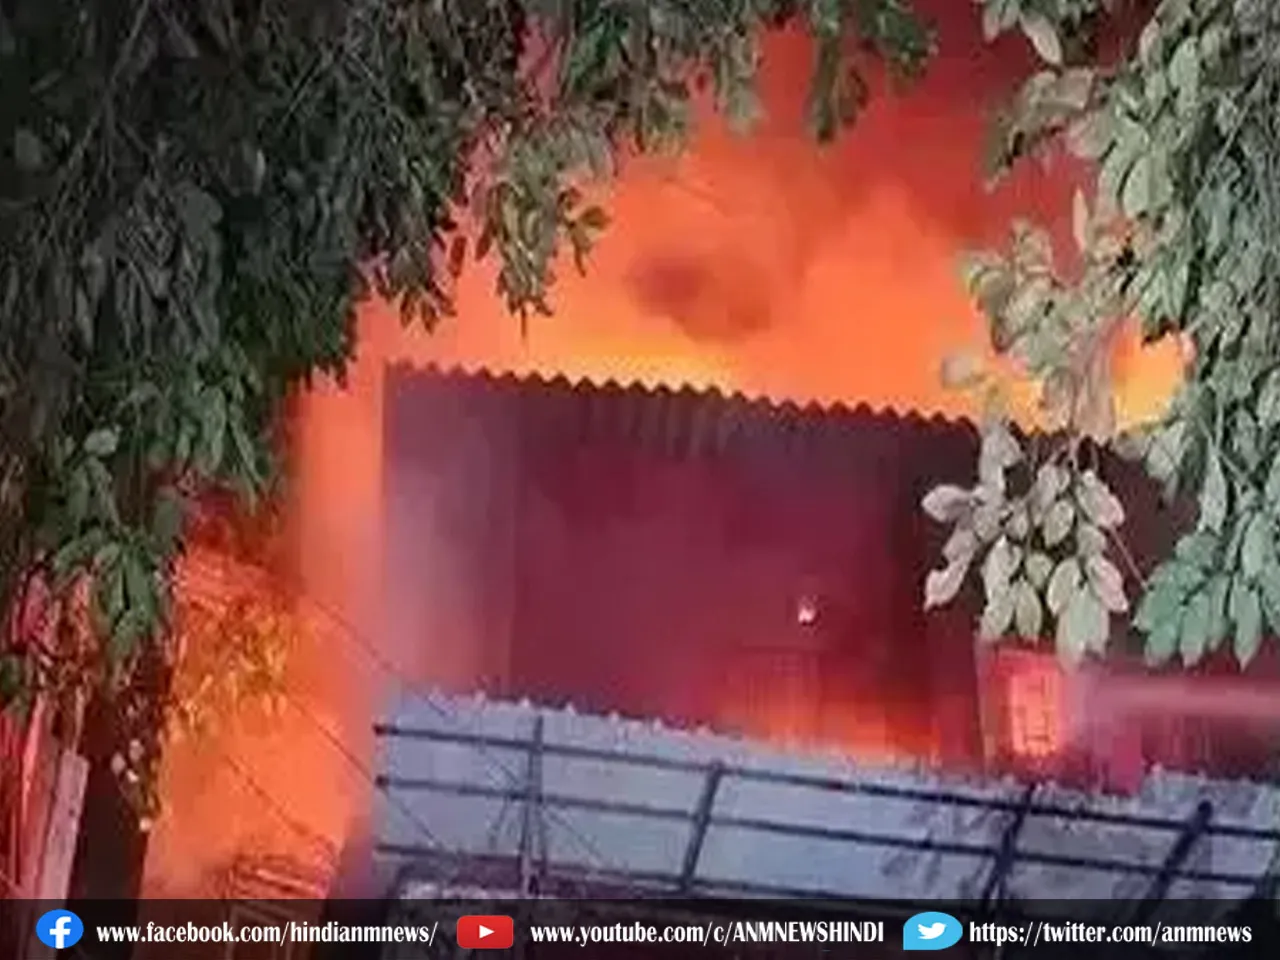 Kolkata News : चांदनी चौक के एक व्यावसायिक इमारत में लगी भीषण आग, मौके पर पहुंचे अग्निशमन मंत्री